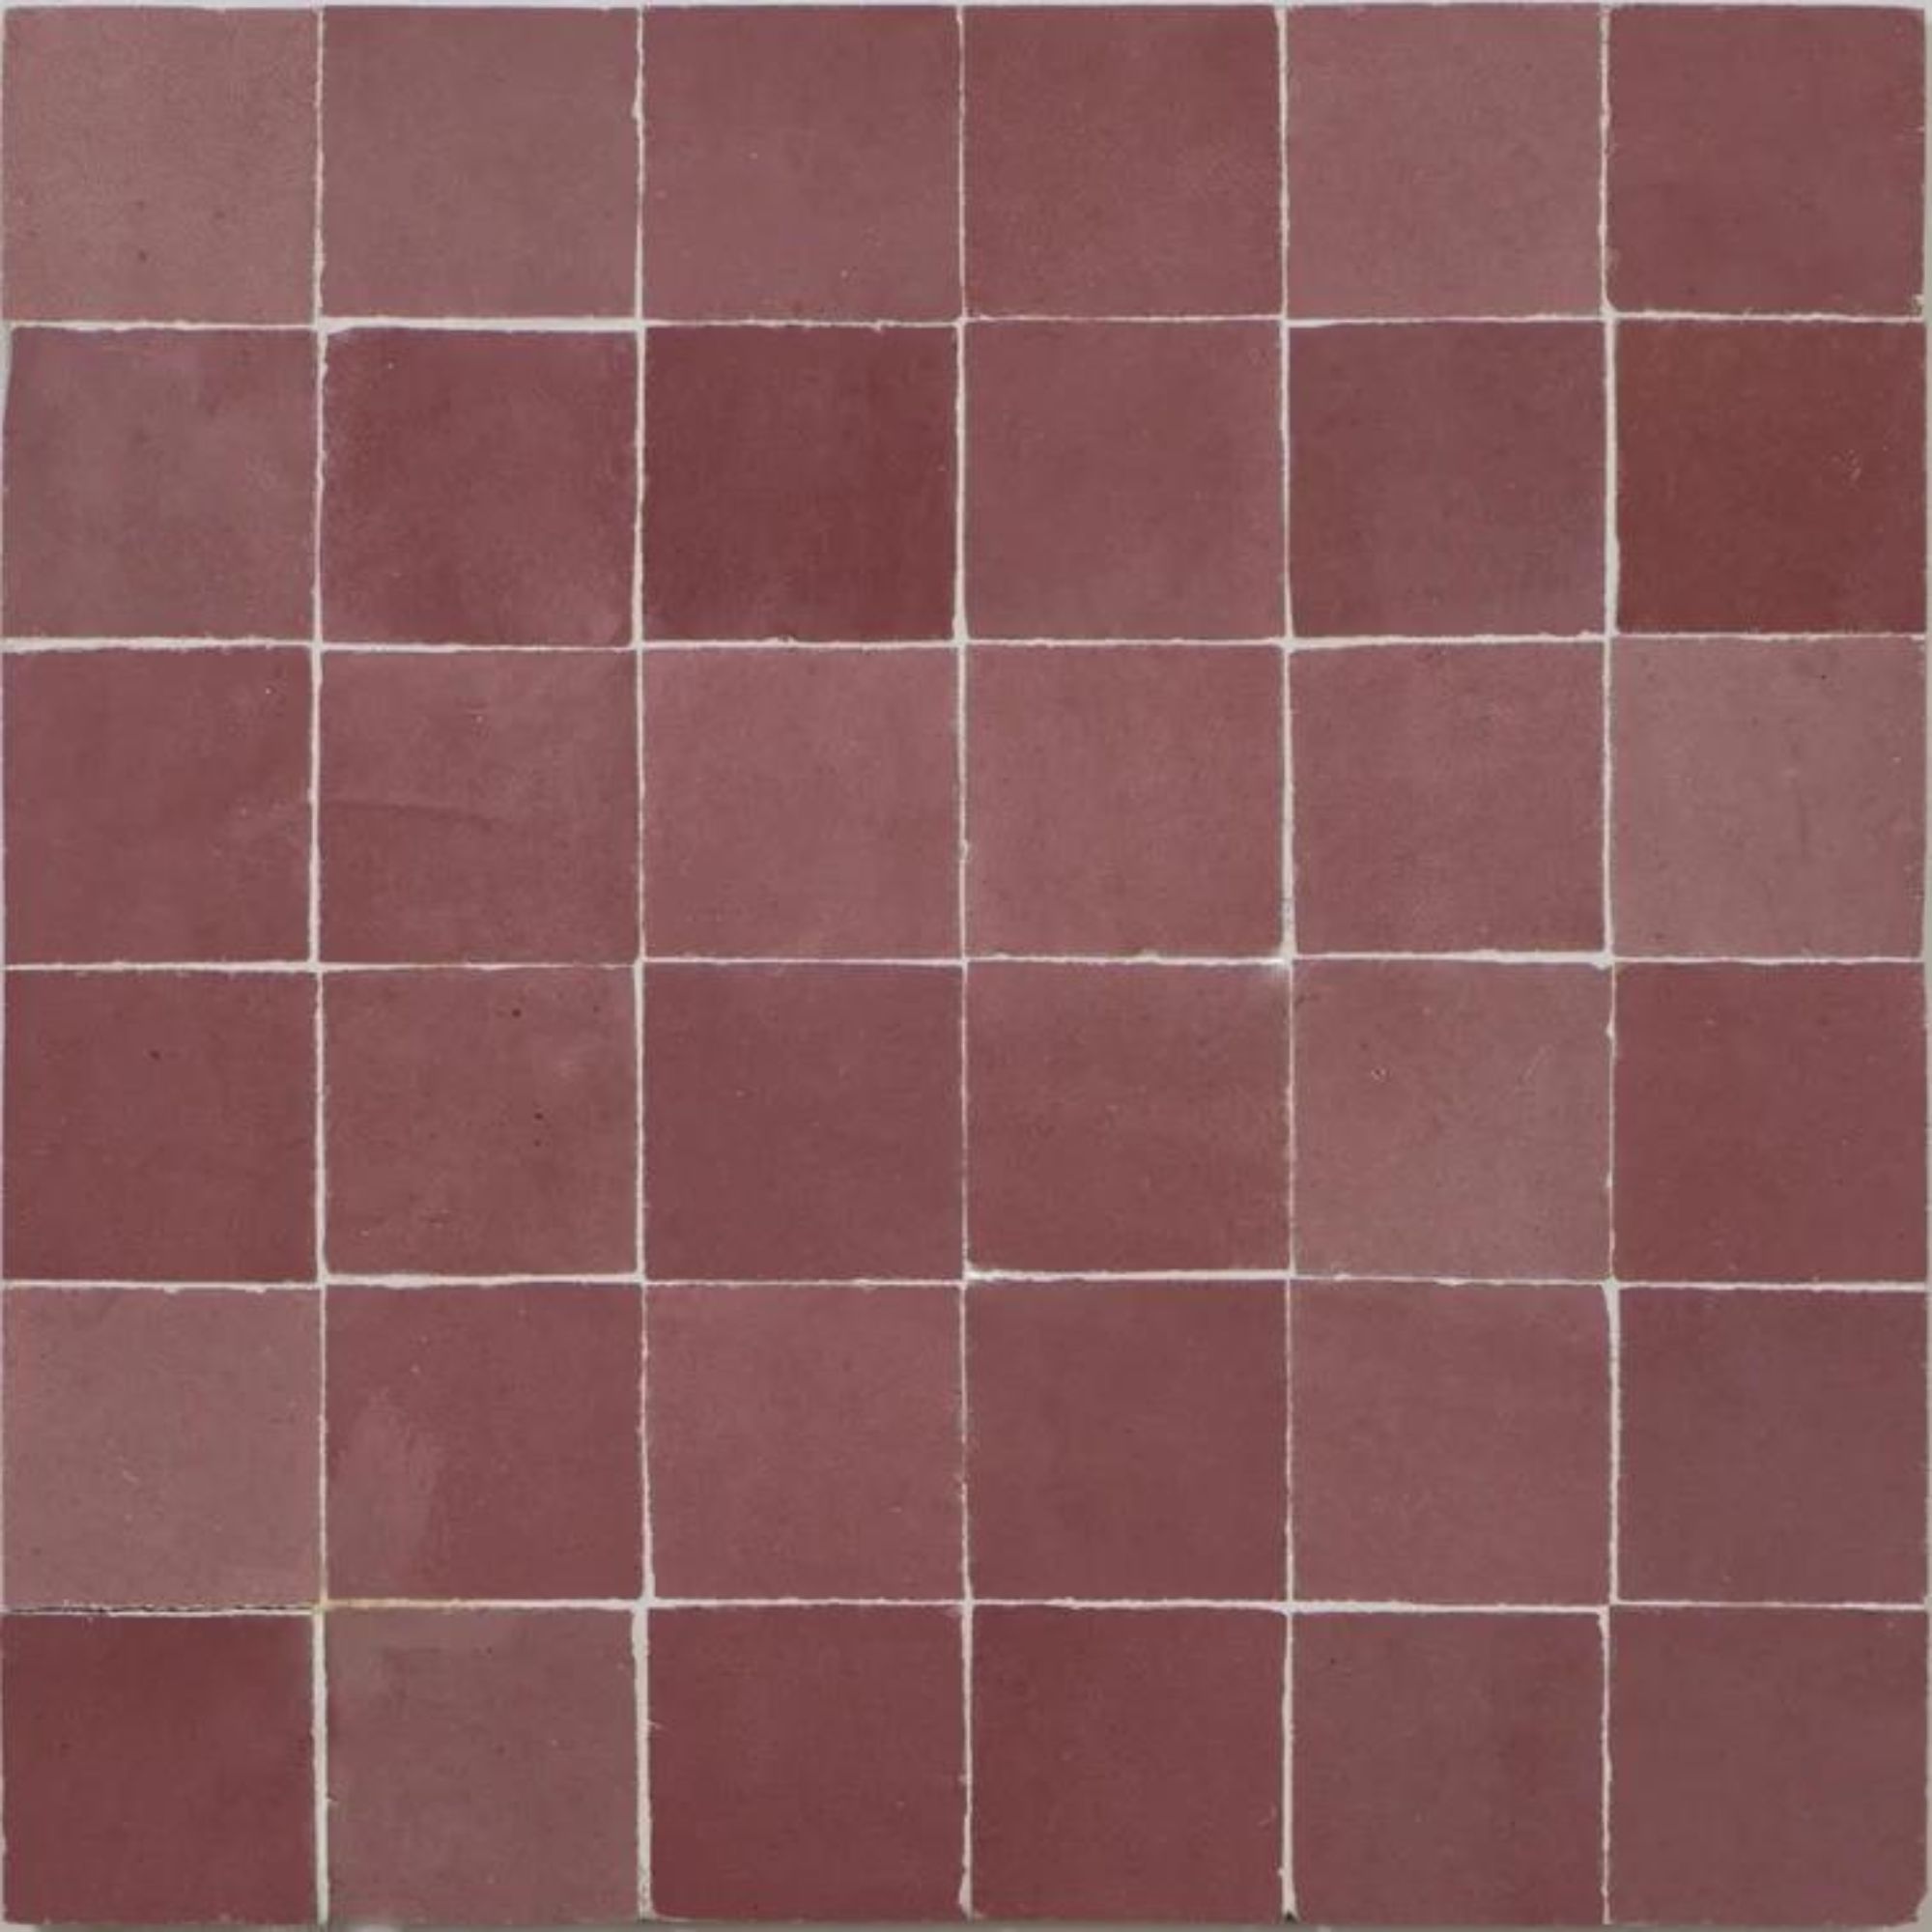 wayfair pink zellige tiles